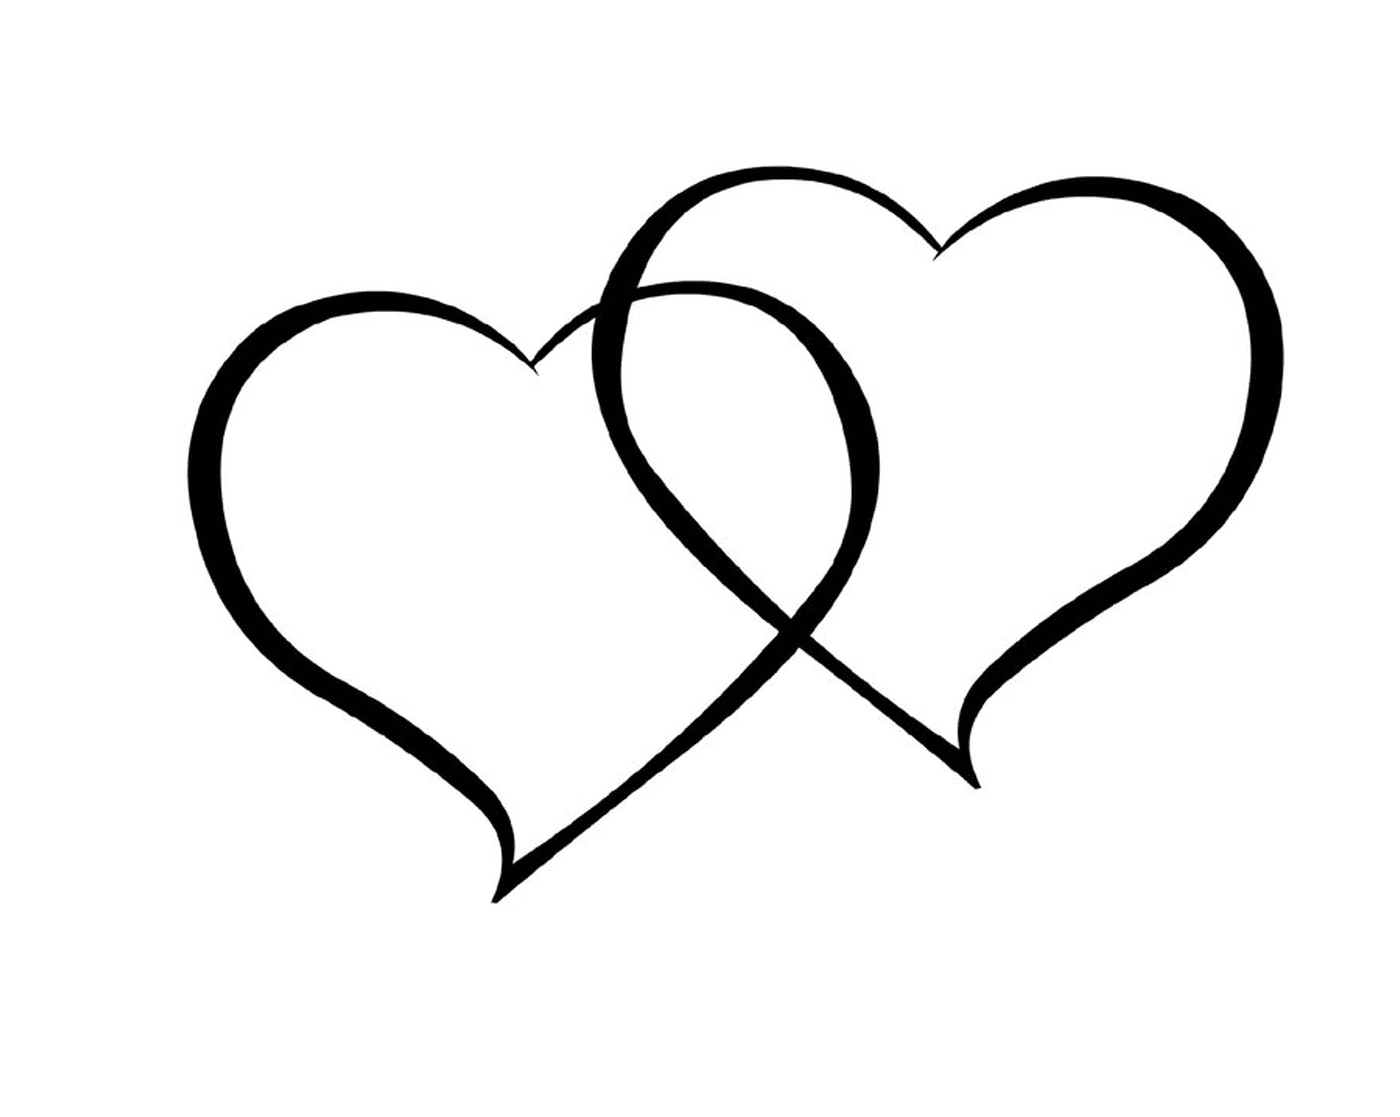  Zwei Herzen in schwarzer Tinte auf weißem Hintergrund gezeichnet 